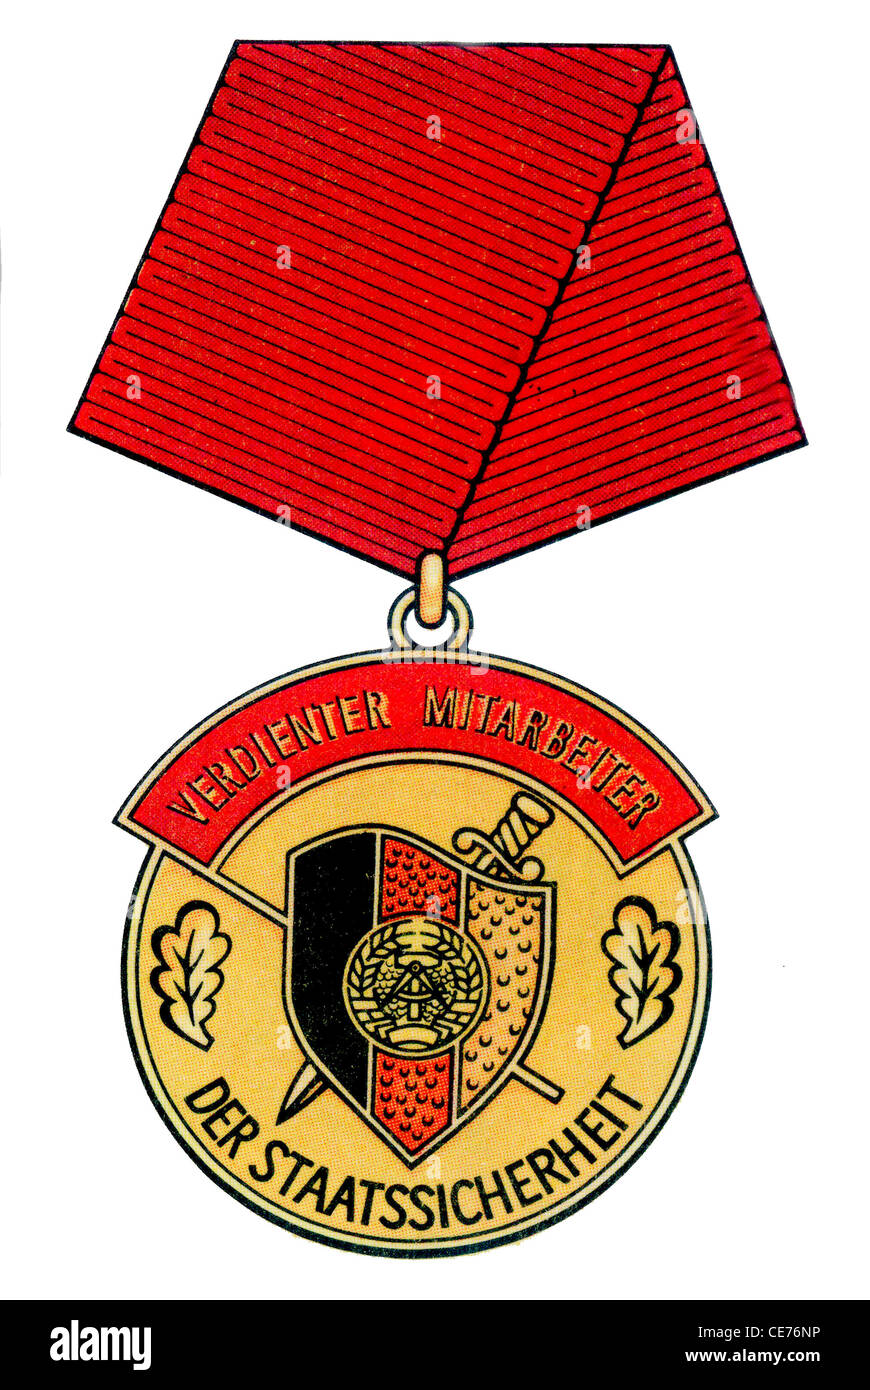 Medalla de la RDA: Verdienter Mitarbeiter der Staatssicherheit. Foto de stock